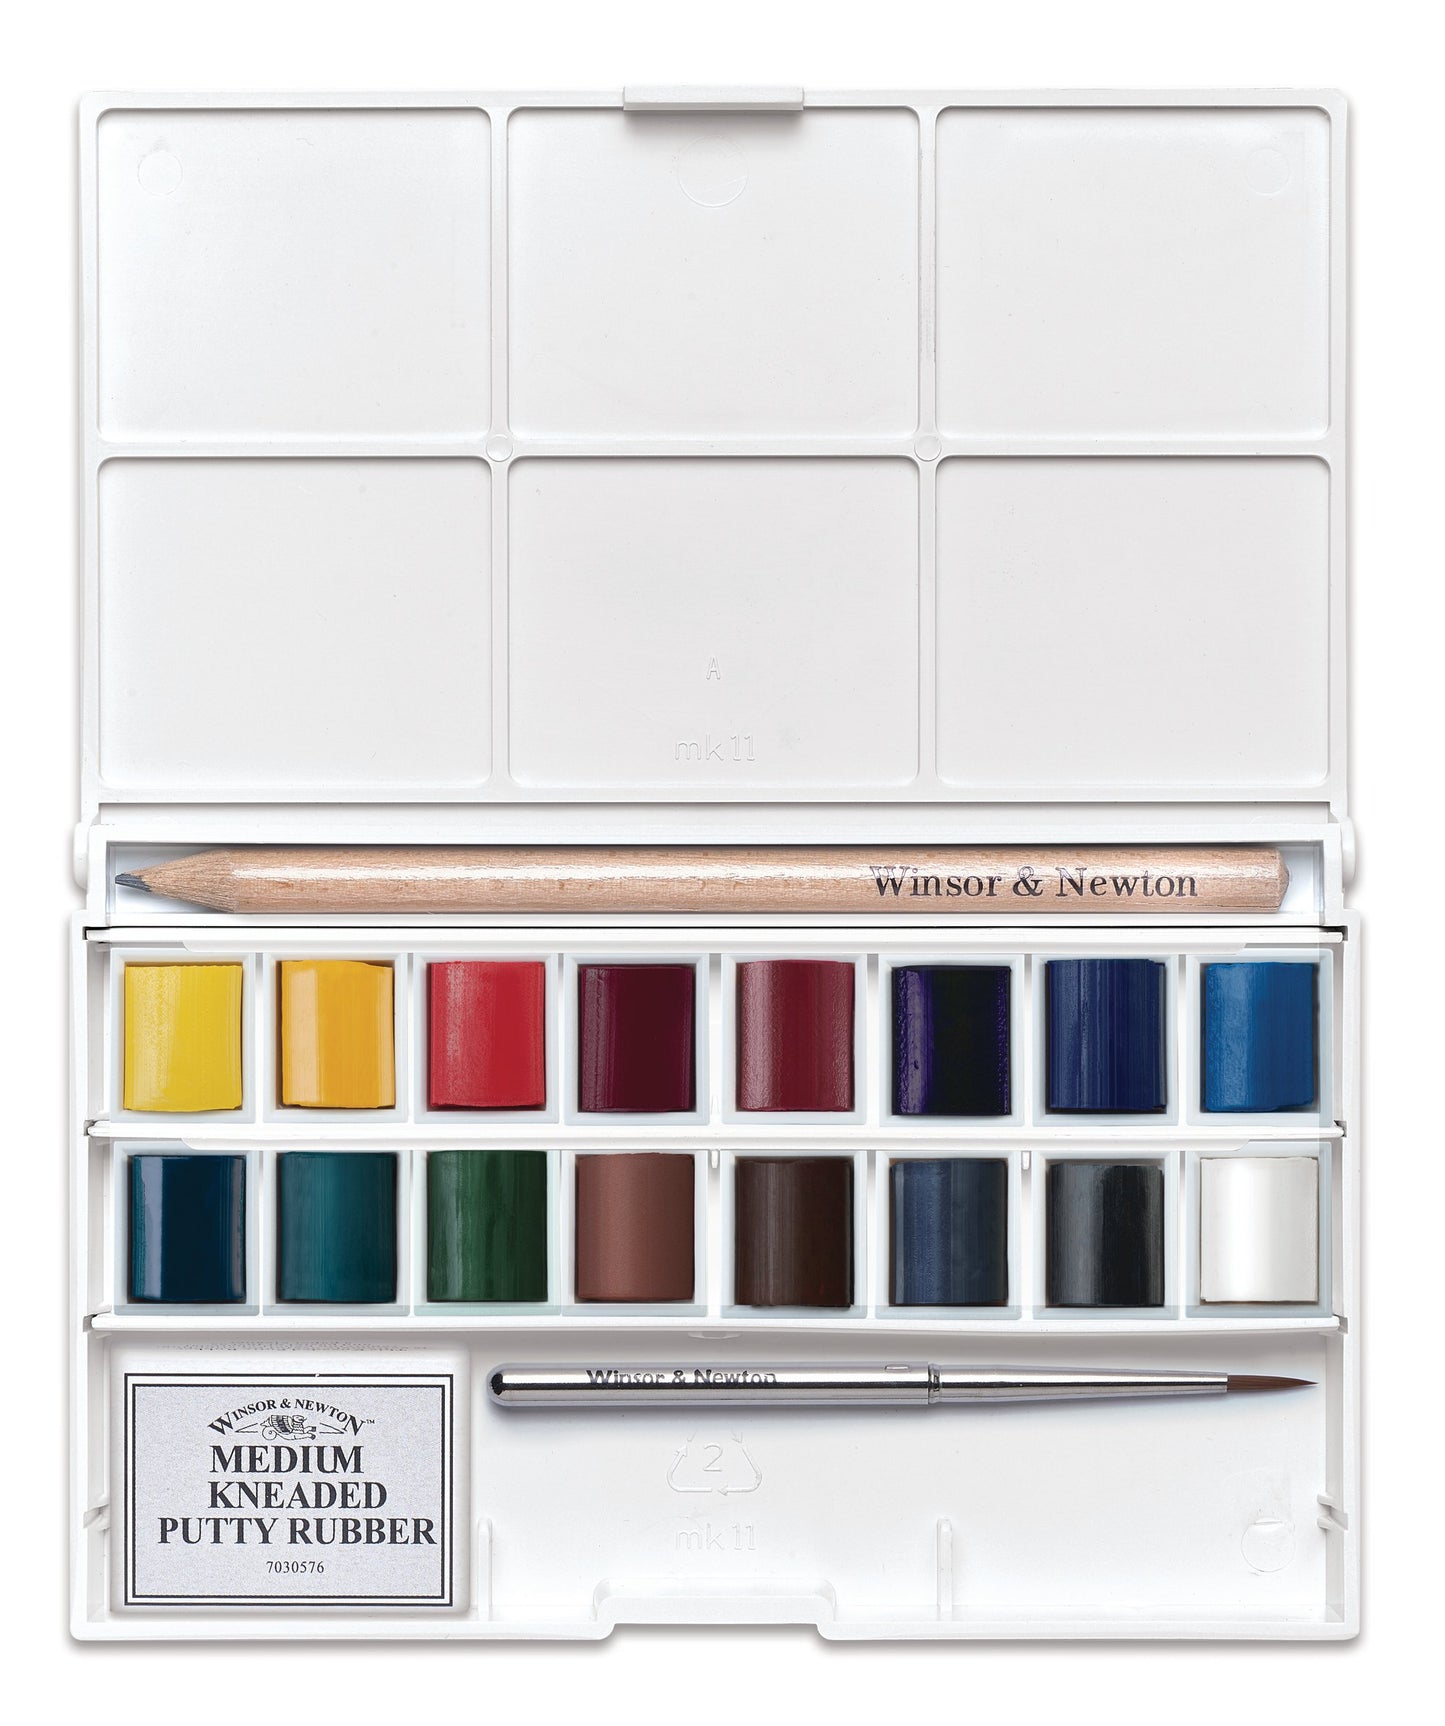 Cotman Watercolour Complete Pocket Set